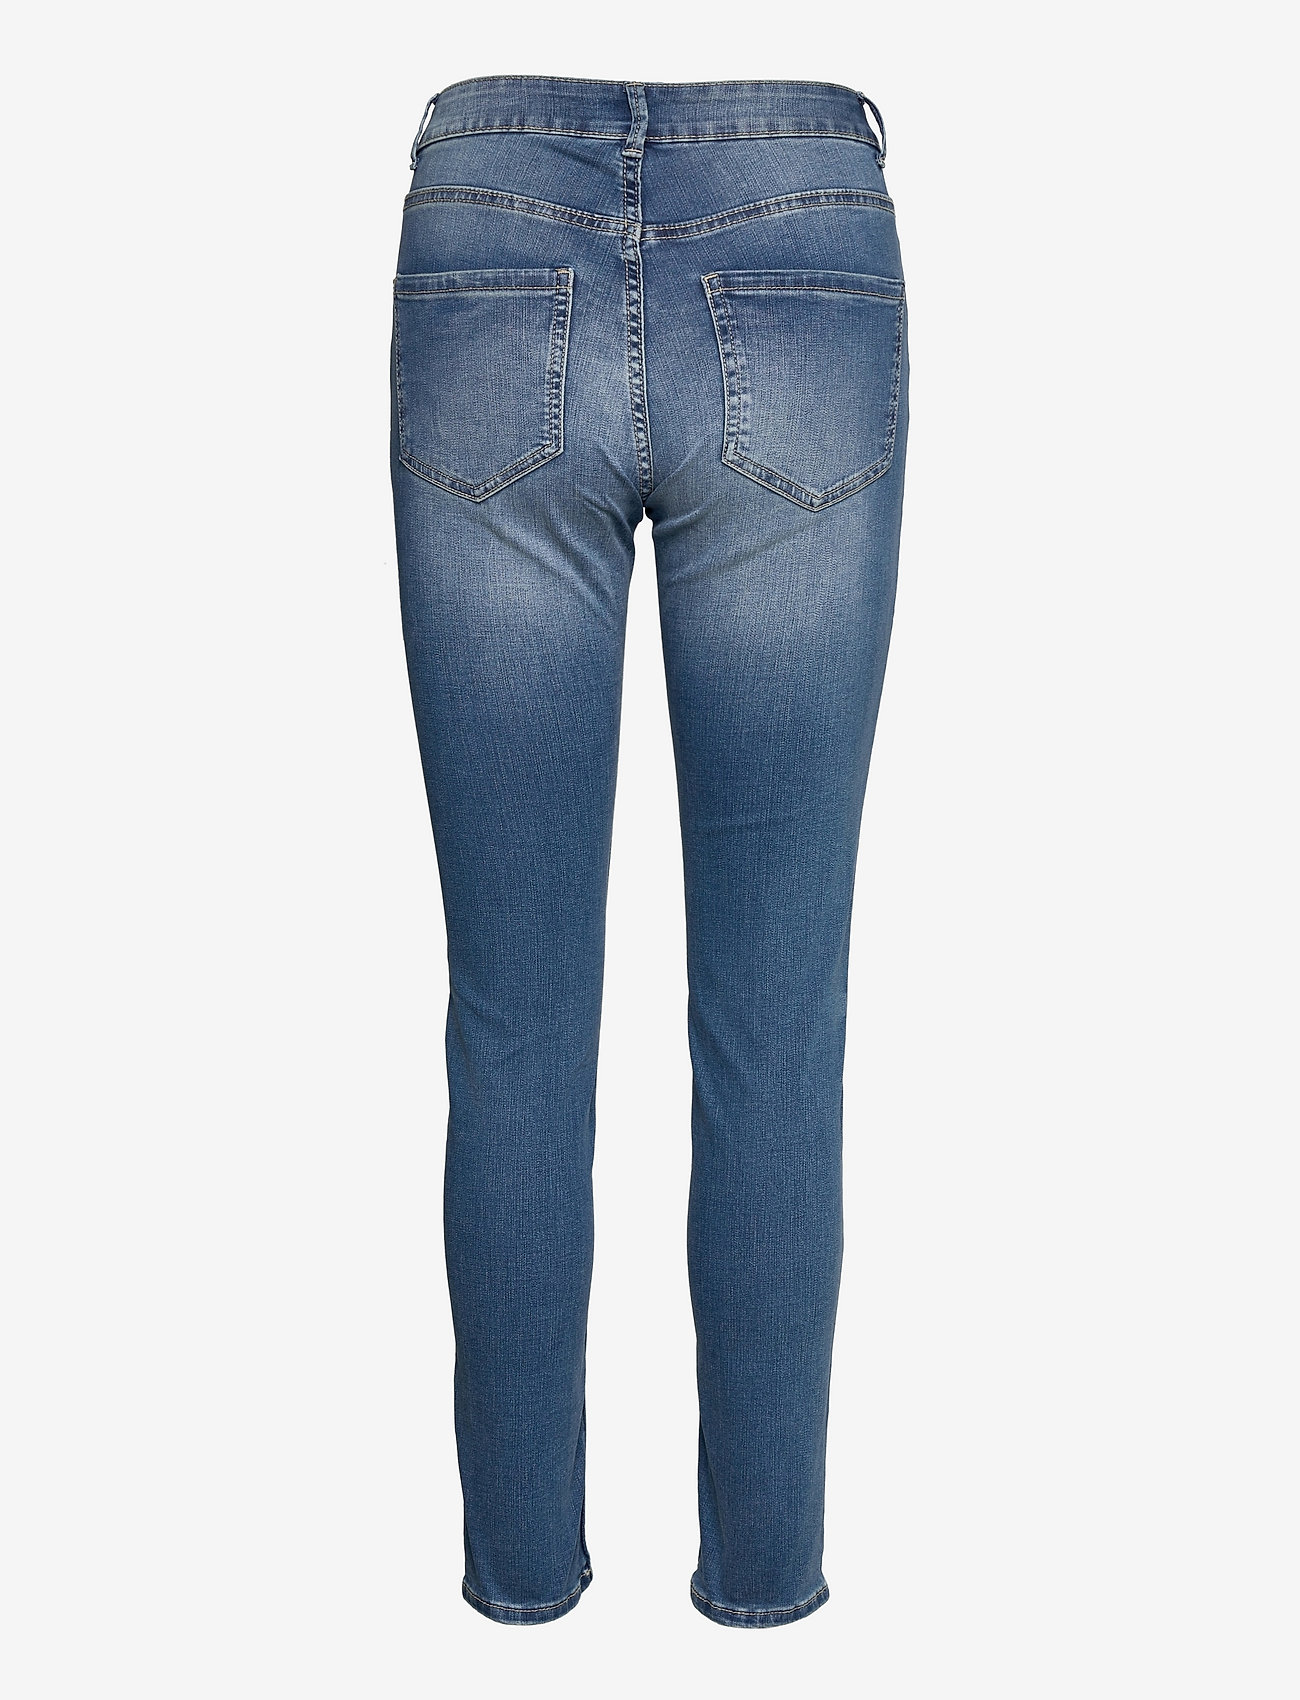 Lindex - Trousers denim Tova Soft blue - slim fit jeans - denim blue - 1